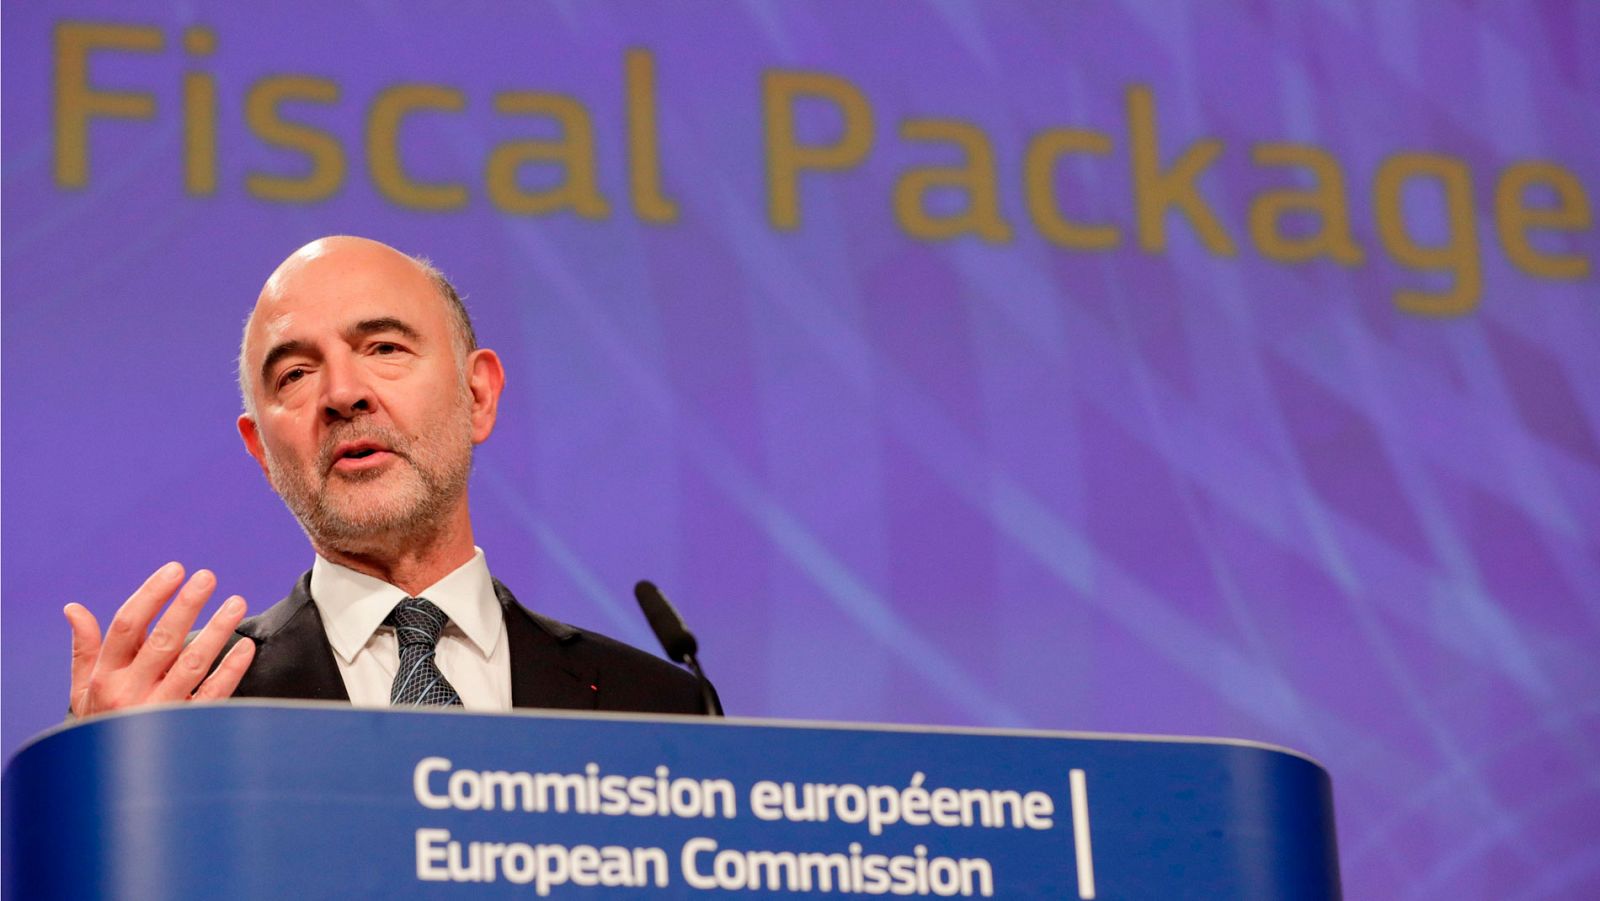 El comisario europeo de Asuntos Económicos y Monetarios, Pierre Moscovici, recomienda a los países con una "deuda pública alta" como España, Portugal y Bélgica, que apliquen "medidas presupuestarias prudentes" e intenten potenciar el crecimiento.